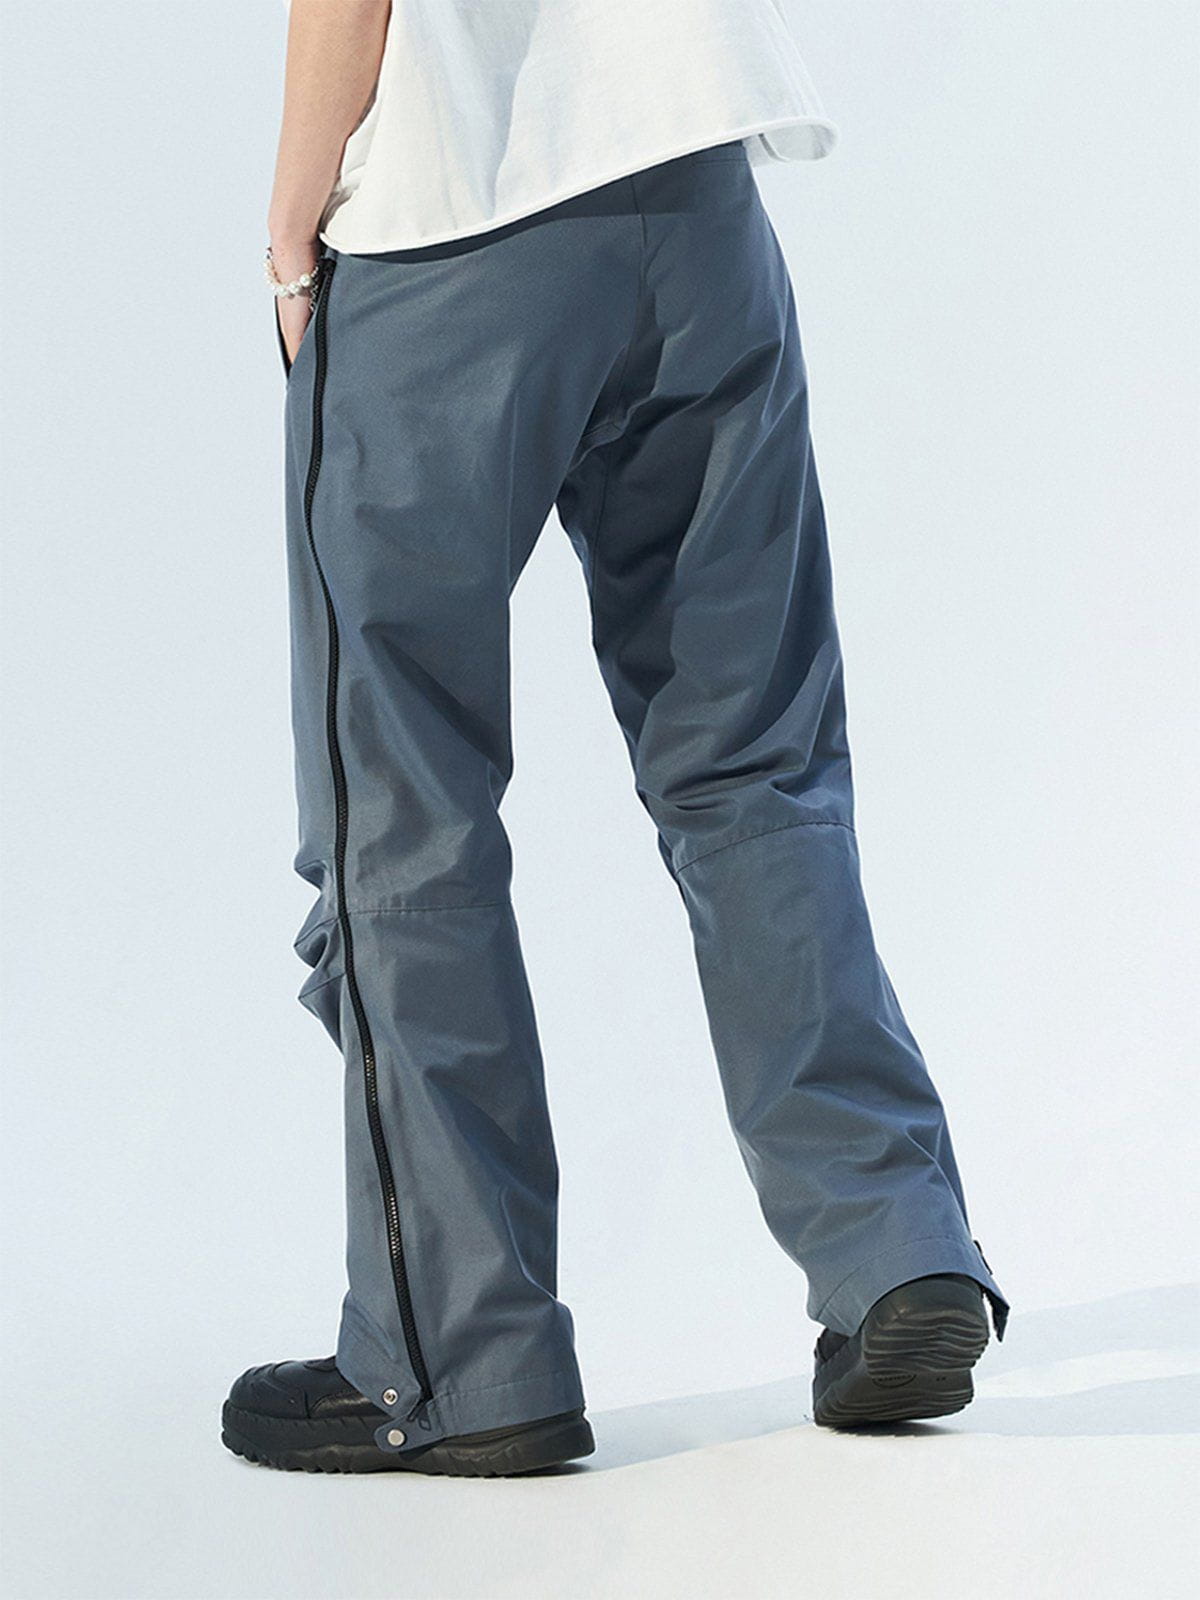 Majesda® - Side Zip Pleated Webbing Pants outfit ideas streetwear fashion